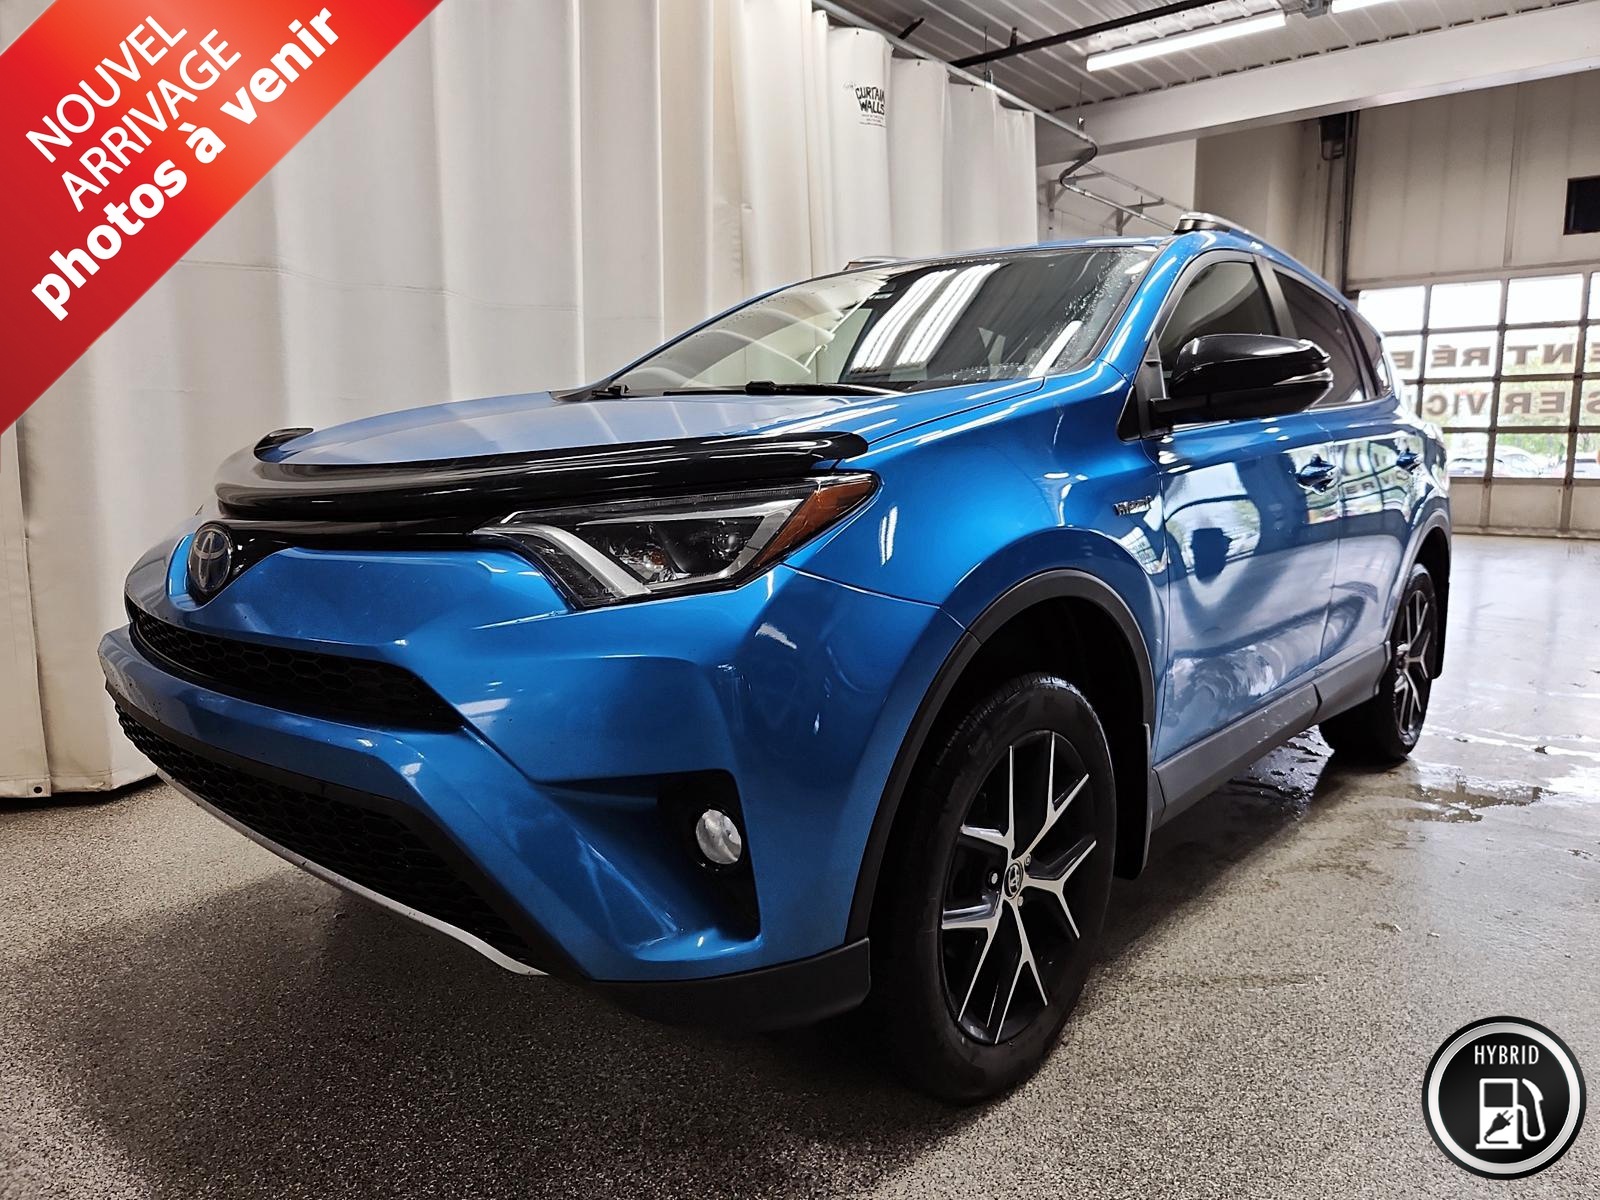 2018 Toyota RAV4 SE - HYBRIDE - AWD - NAVIGATION - TOIT OUVRANT